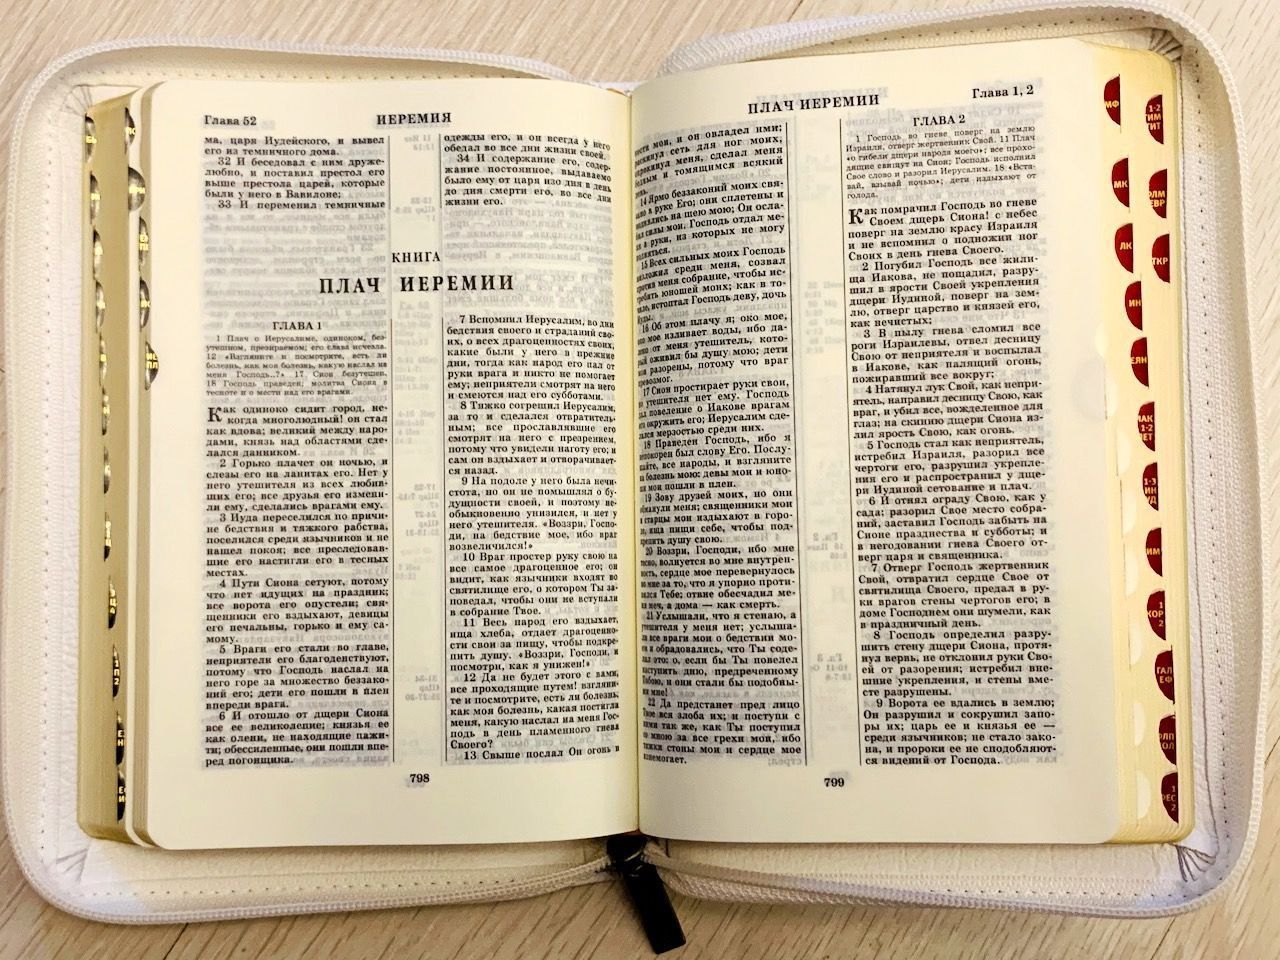 Библия 047zti кожаный переплет с молнией и индексами, цвет белый, средний формат, 120*165 мм, код 1190